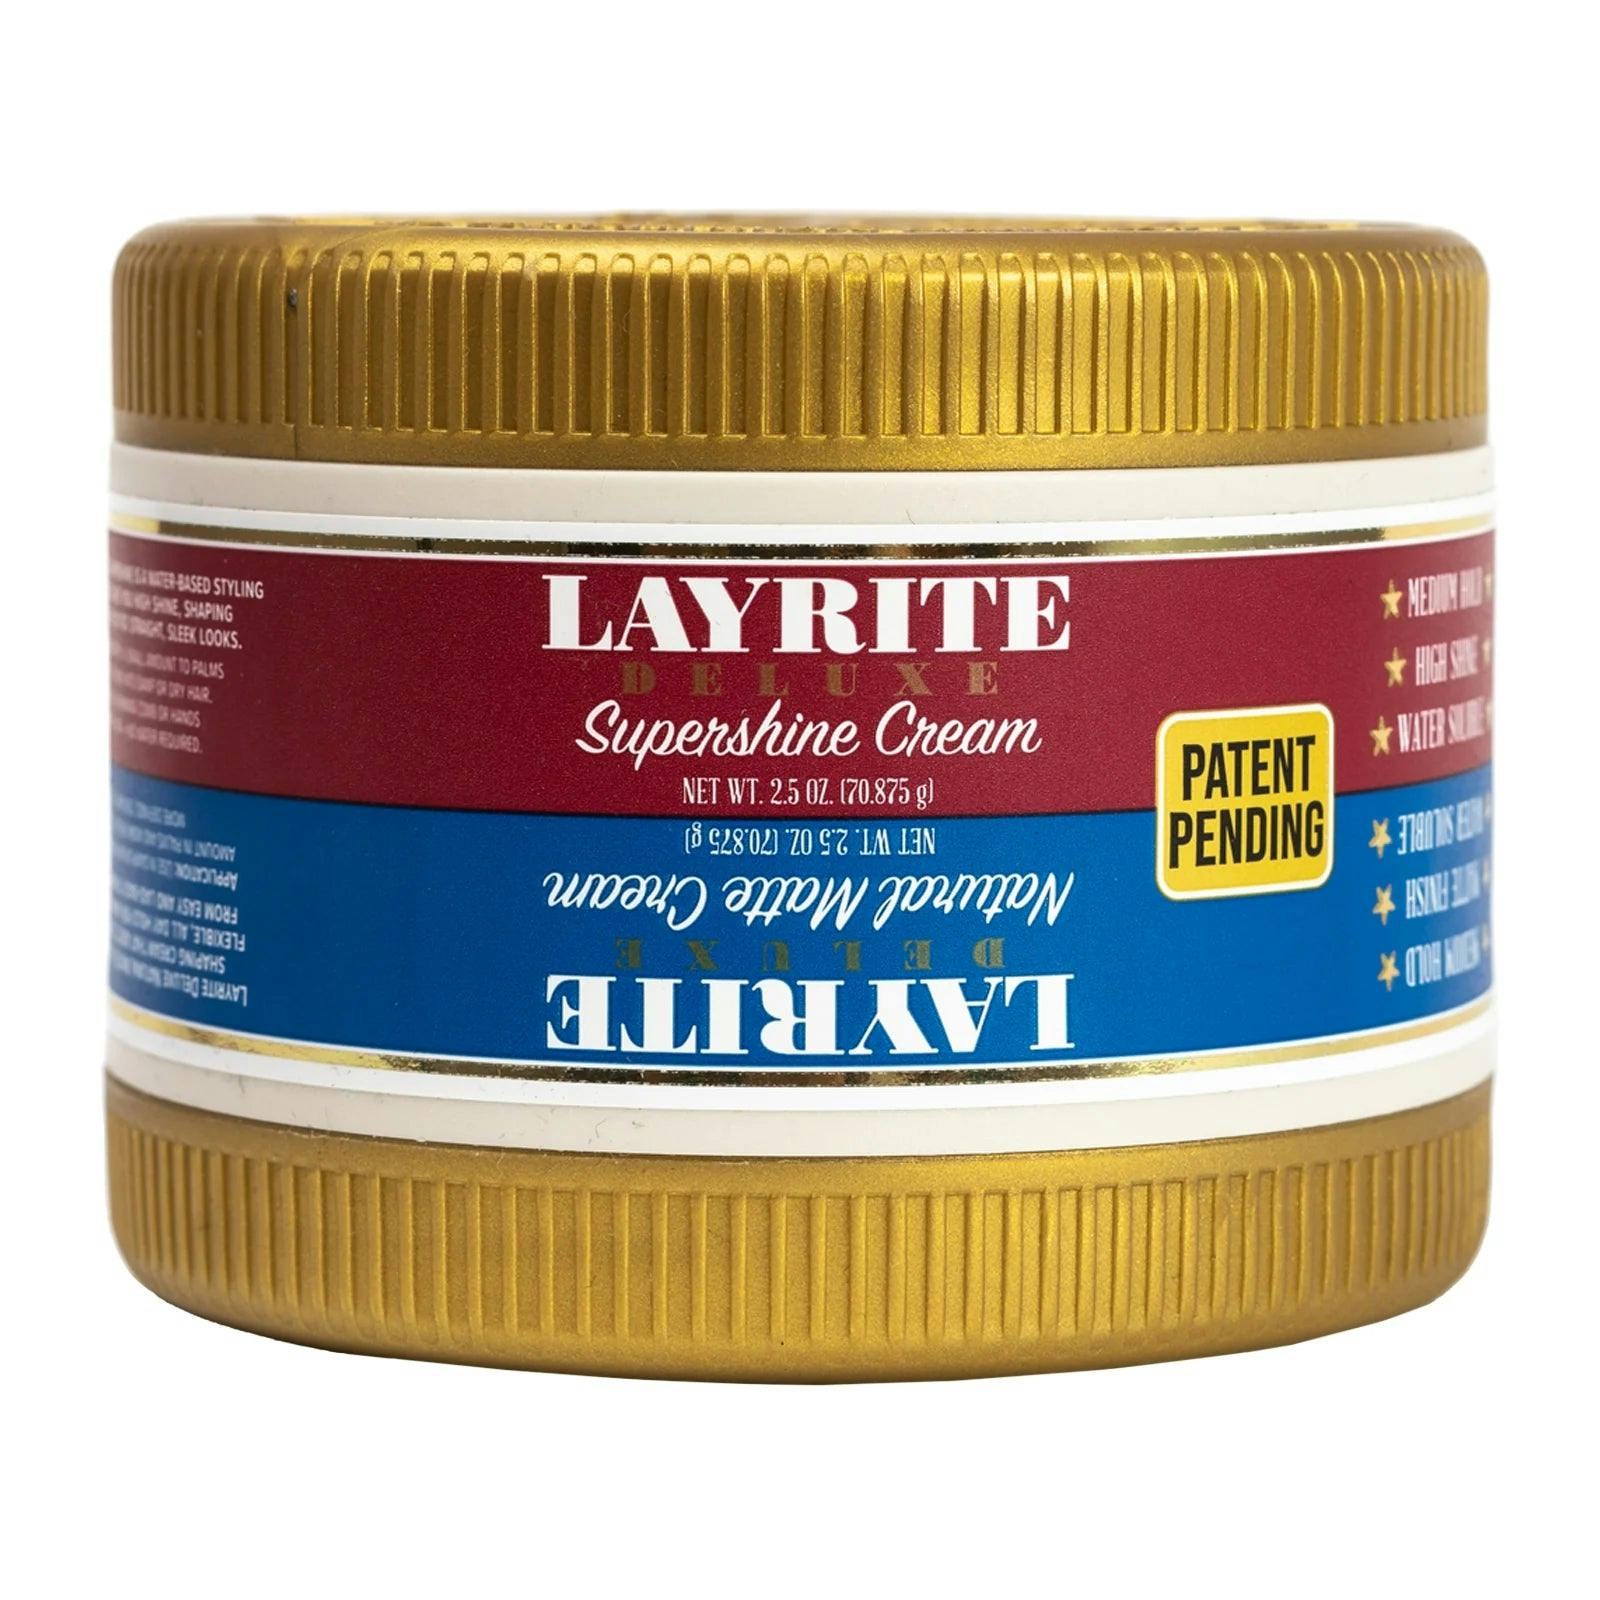 Layrite Dual Chamber Natural Matte Cream & Supershine Cream